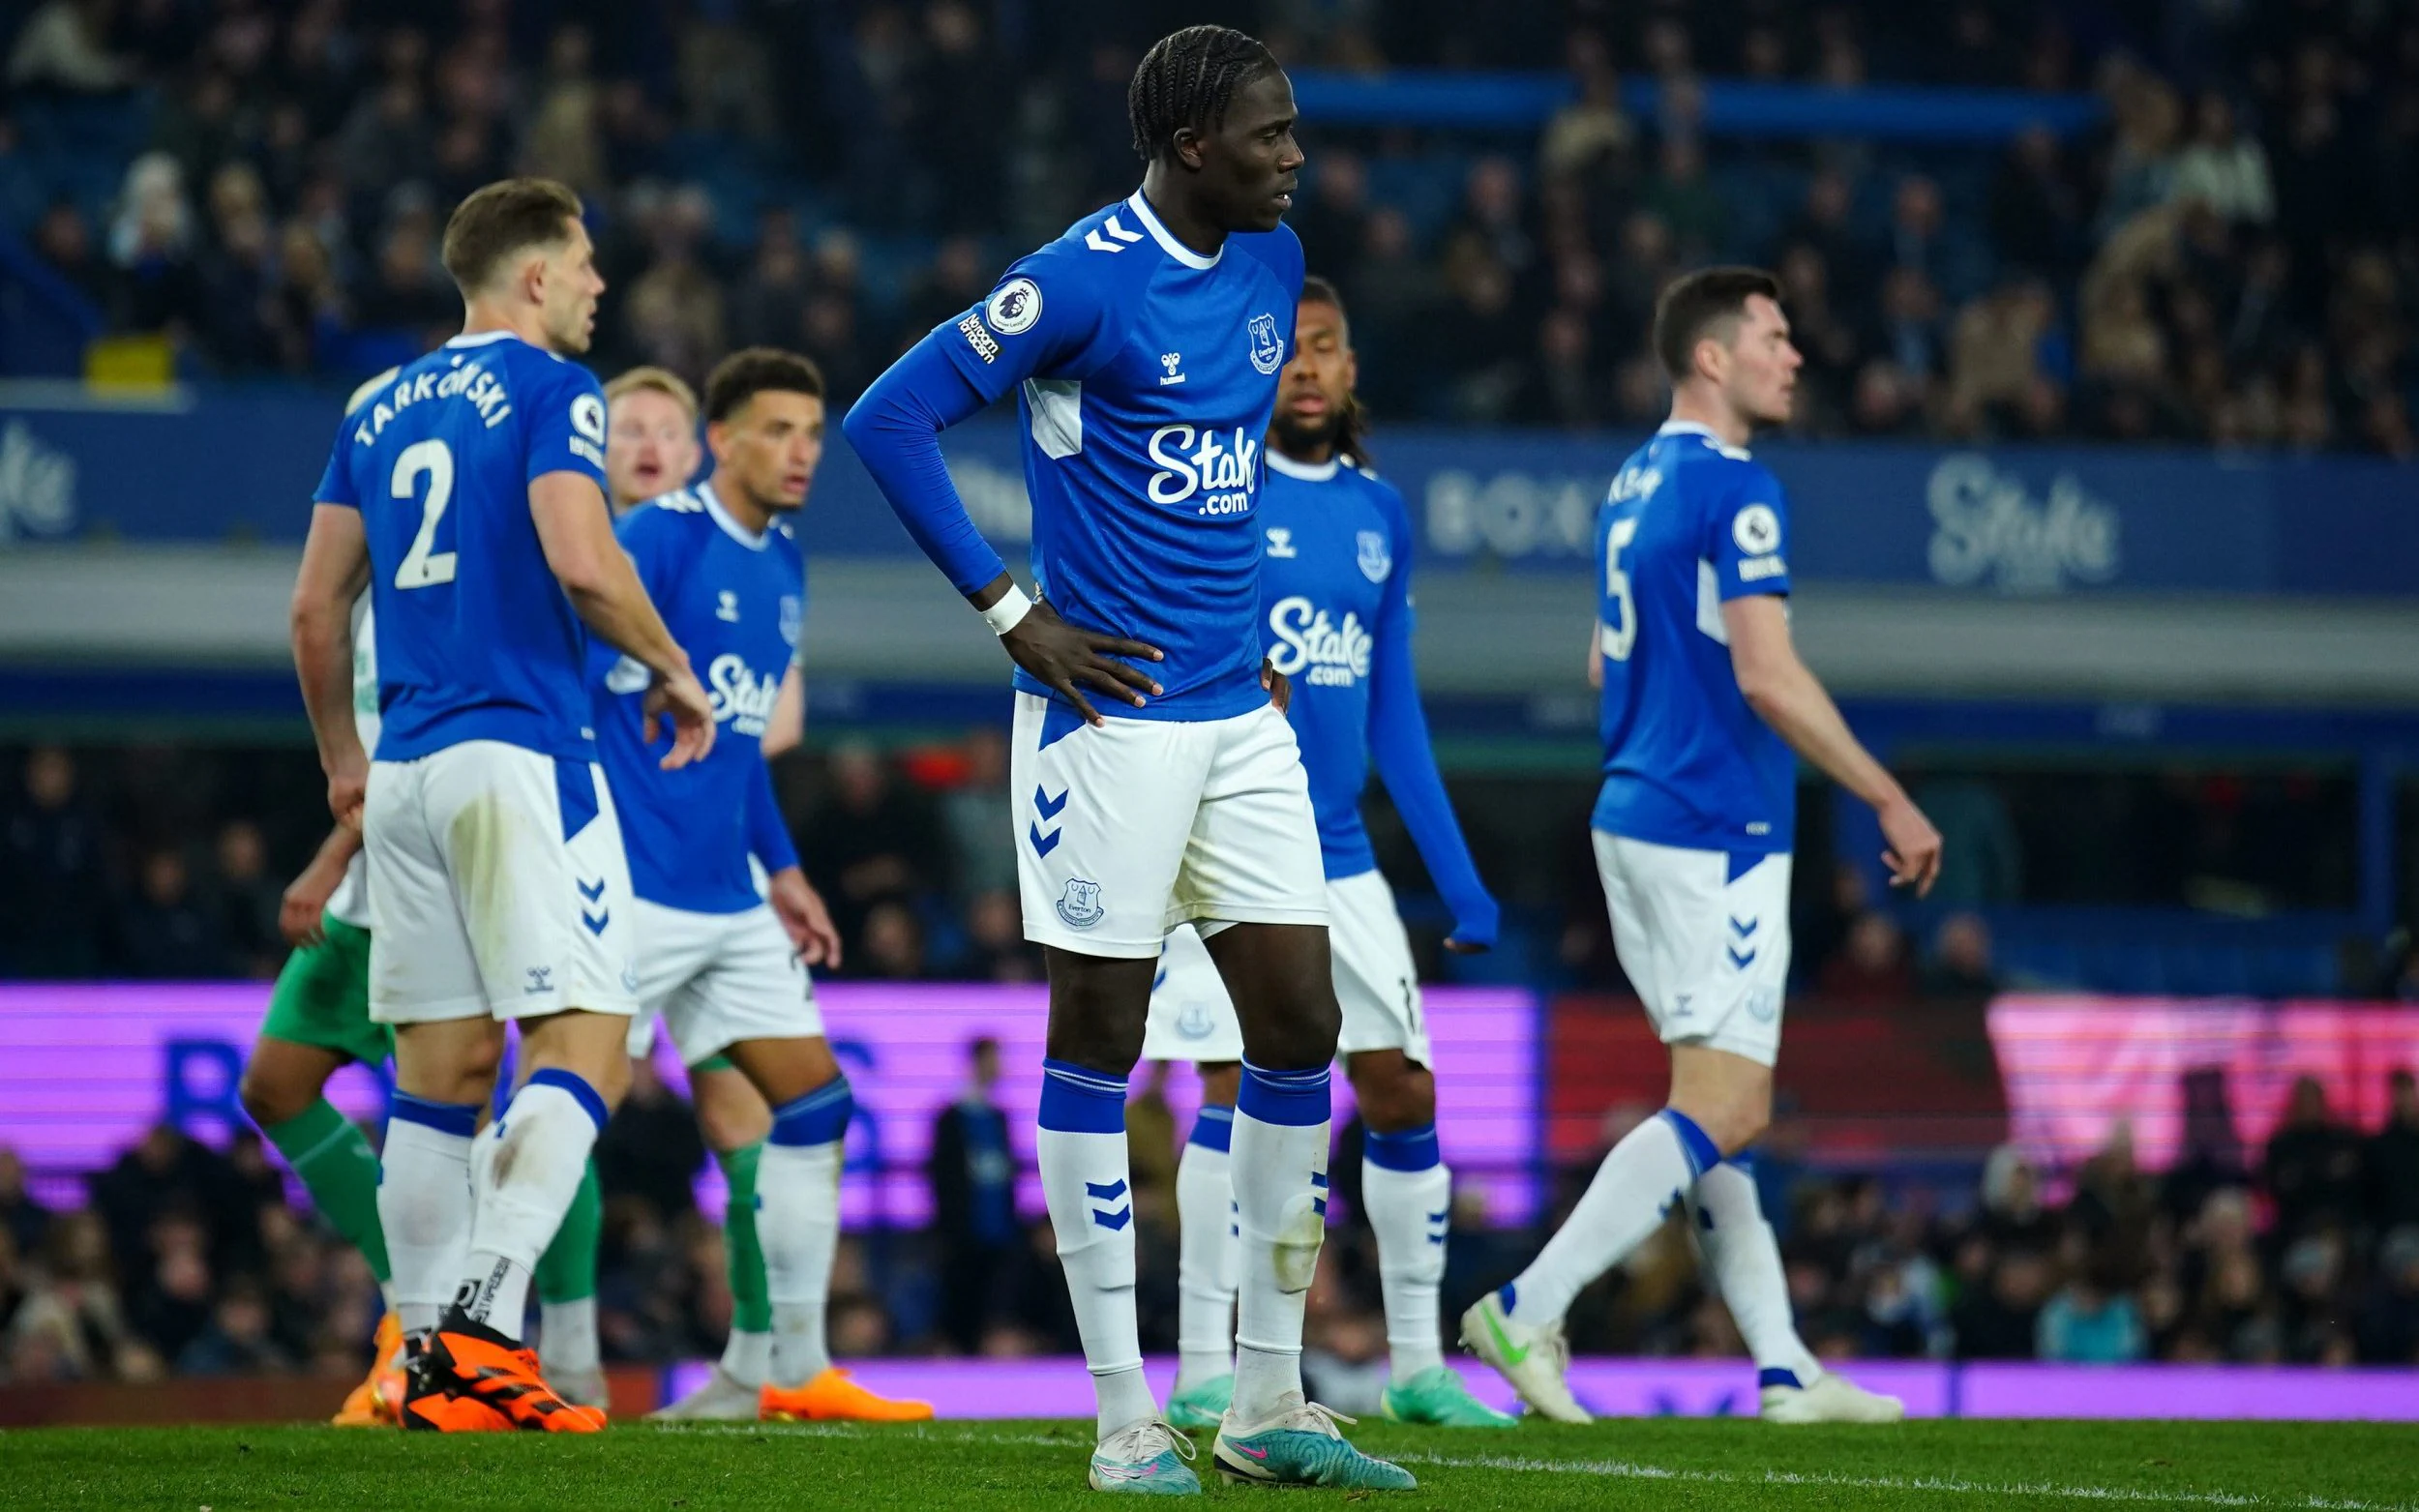 REPORT | Everton 1-4 Newcastle United